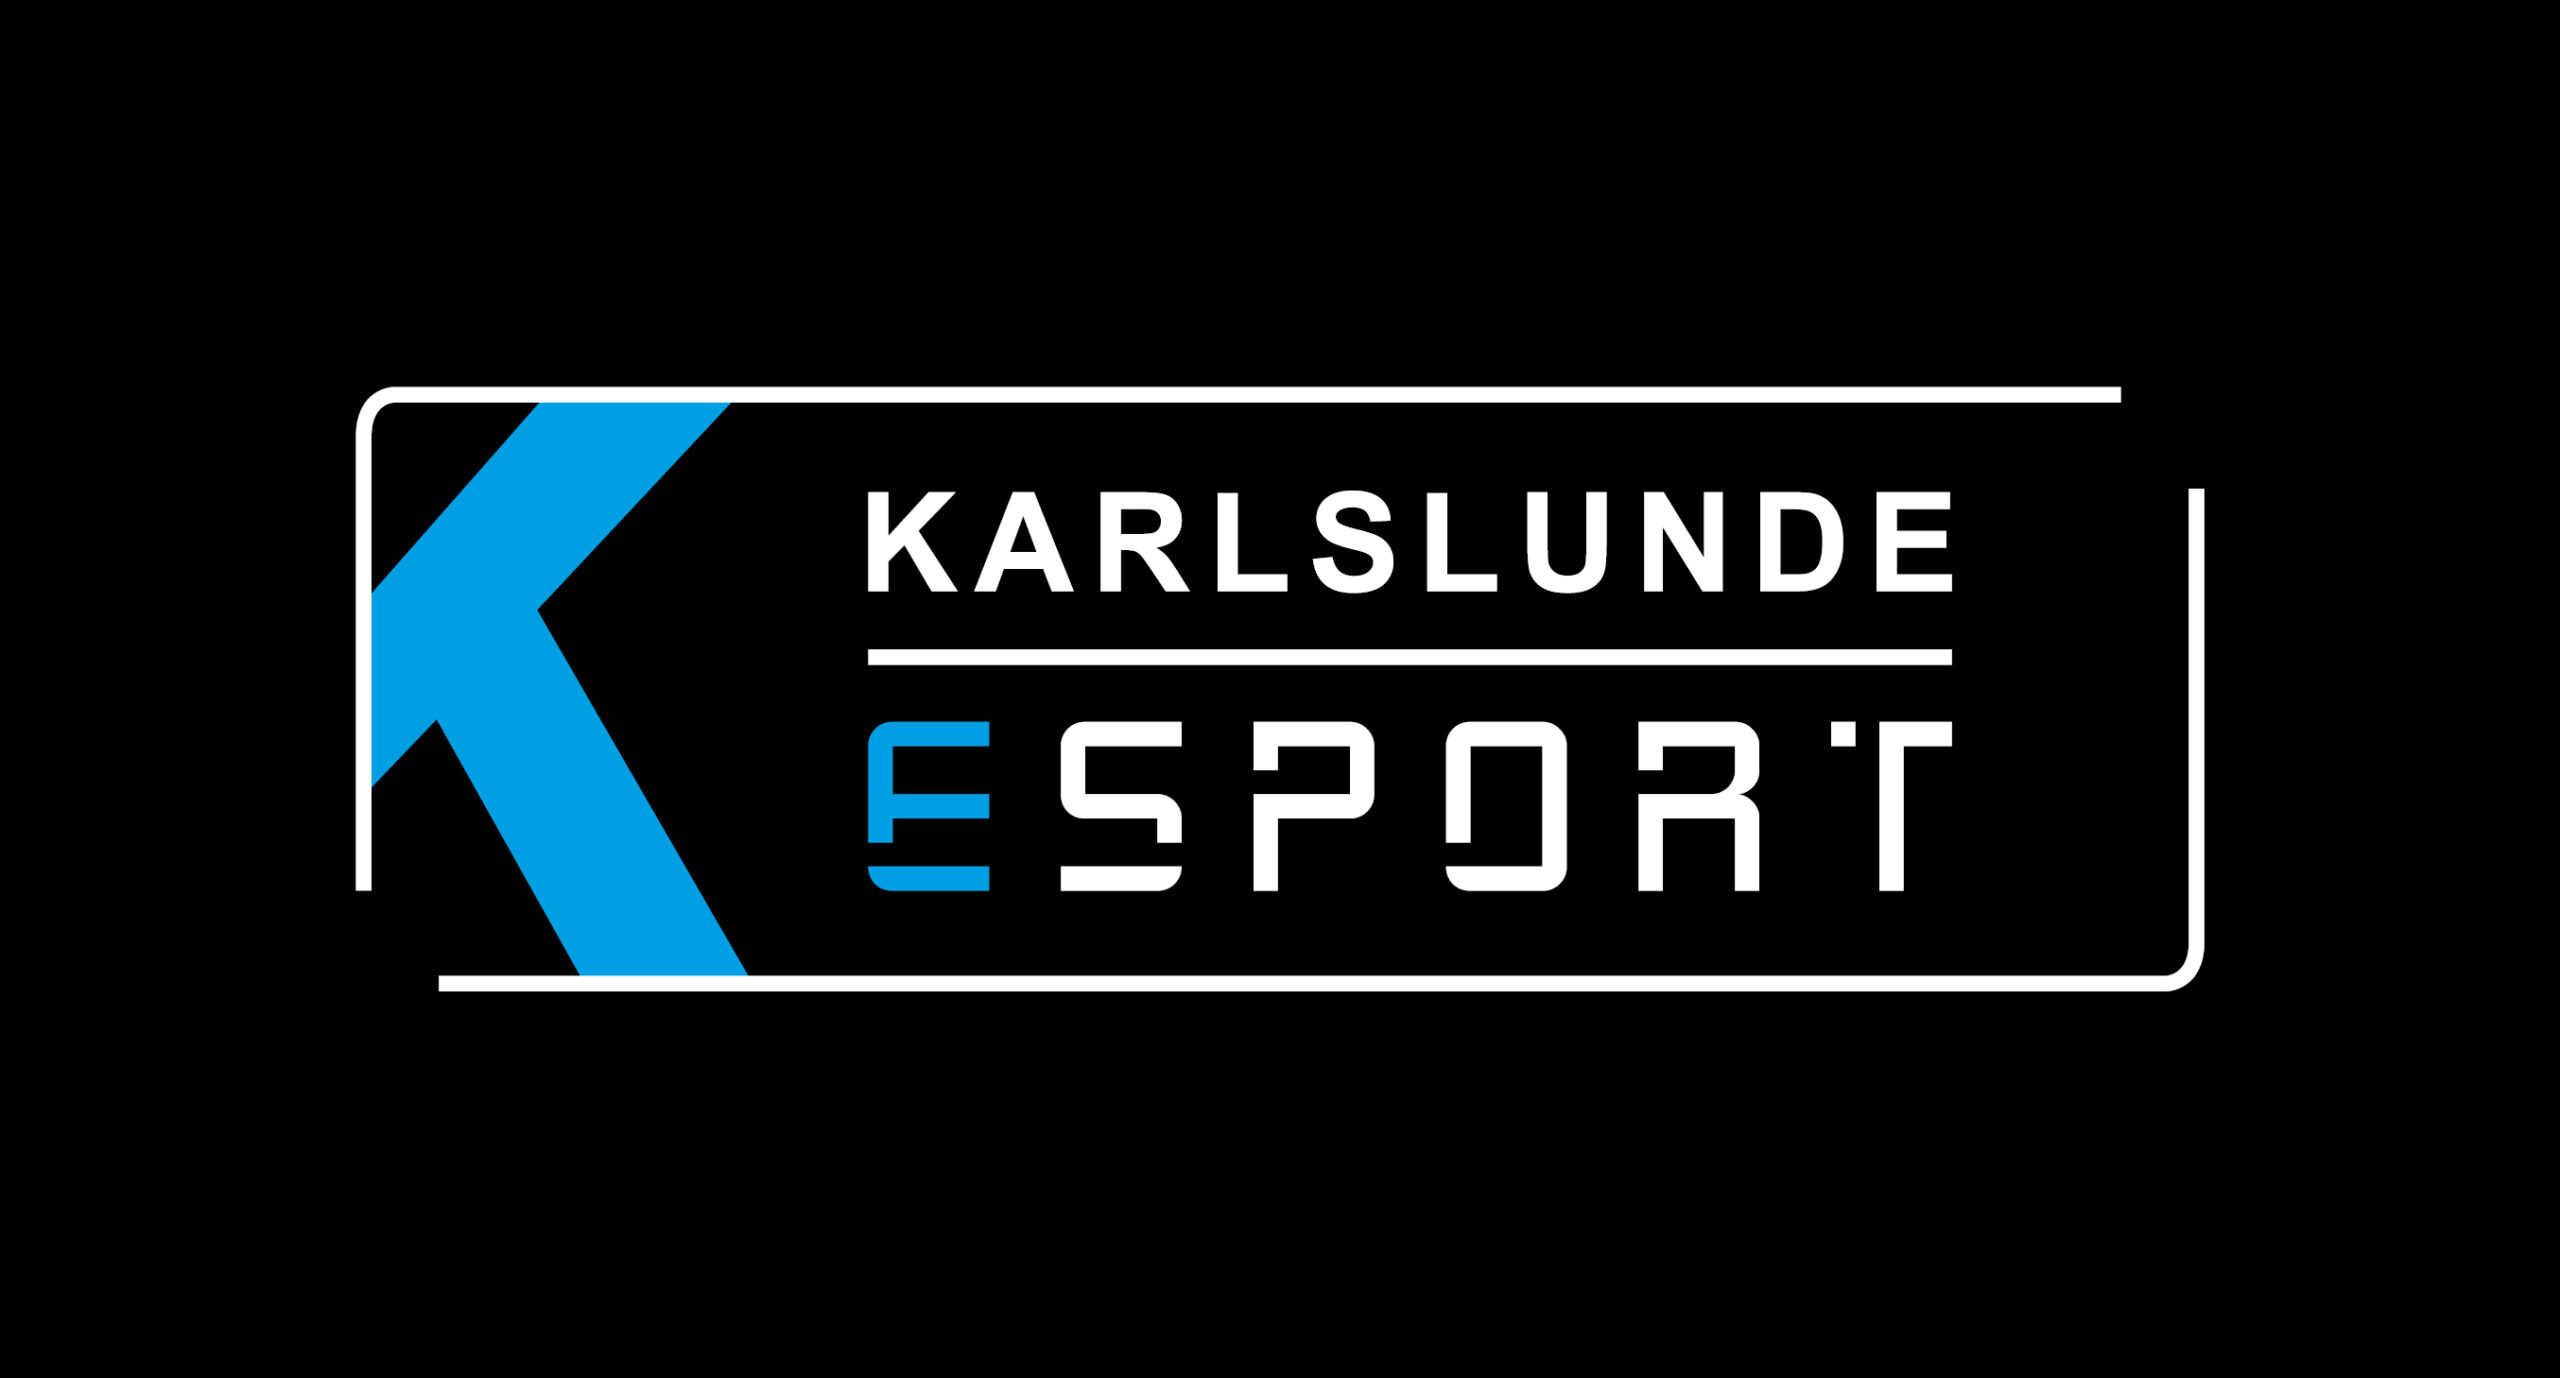 Karlslunde Esport